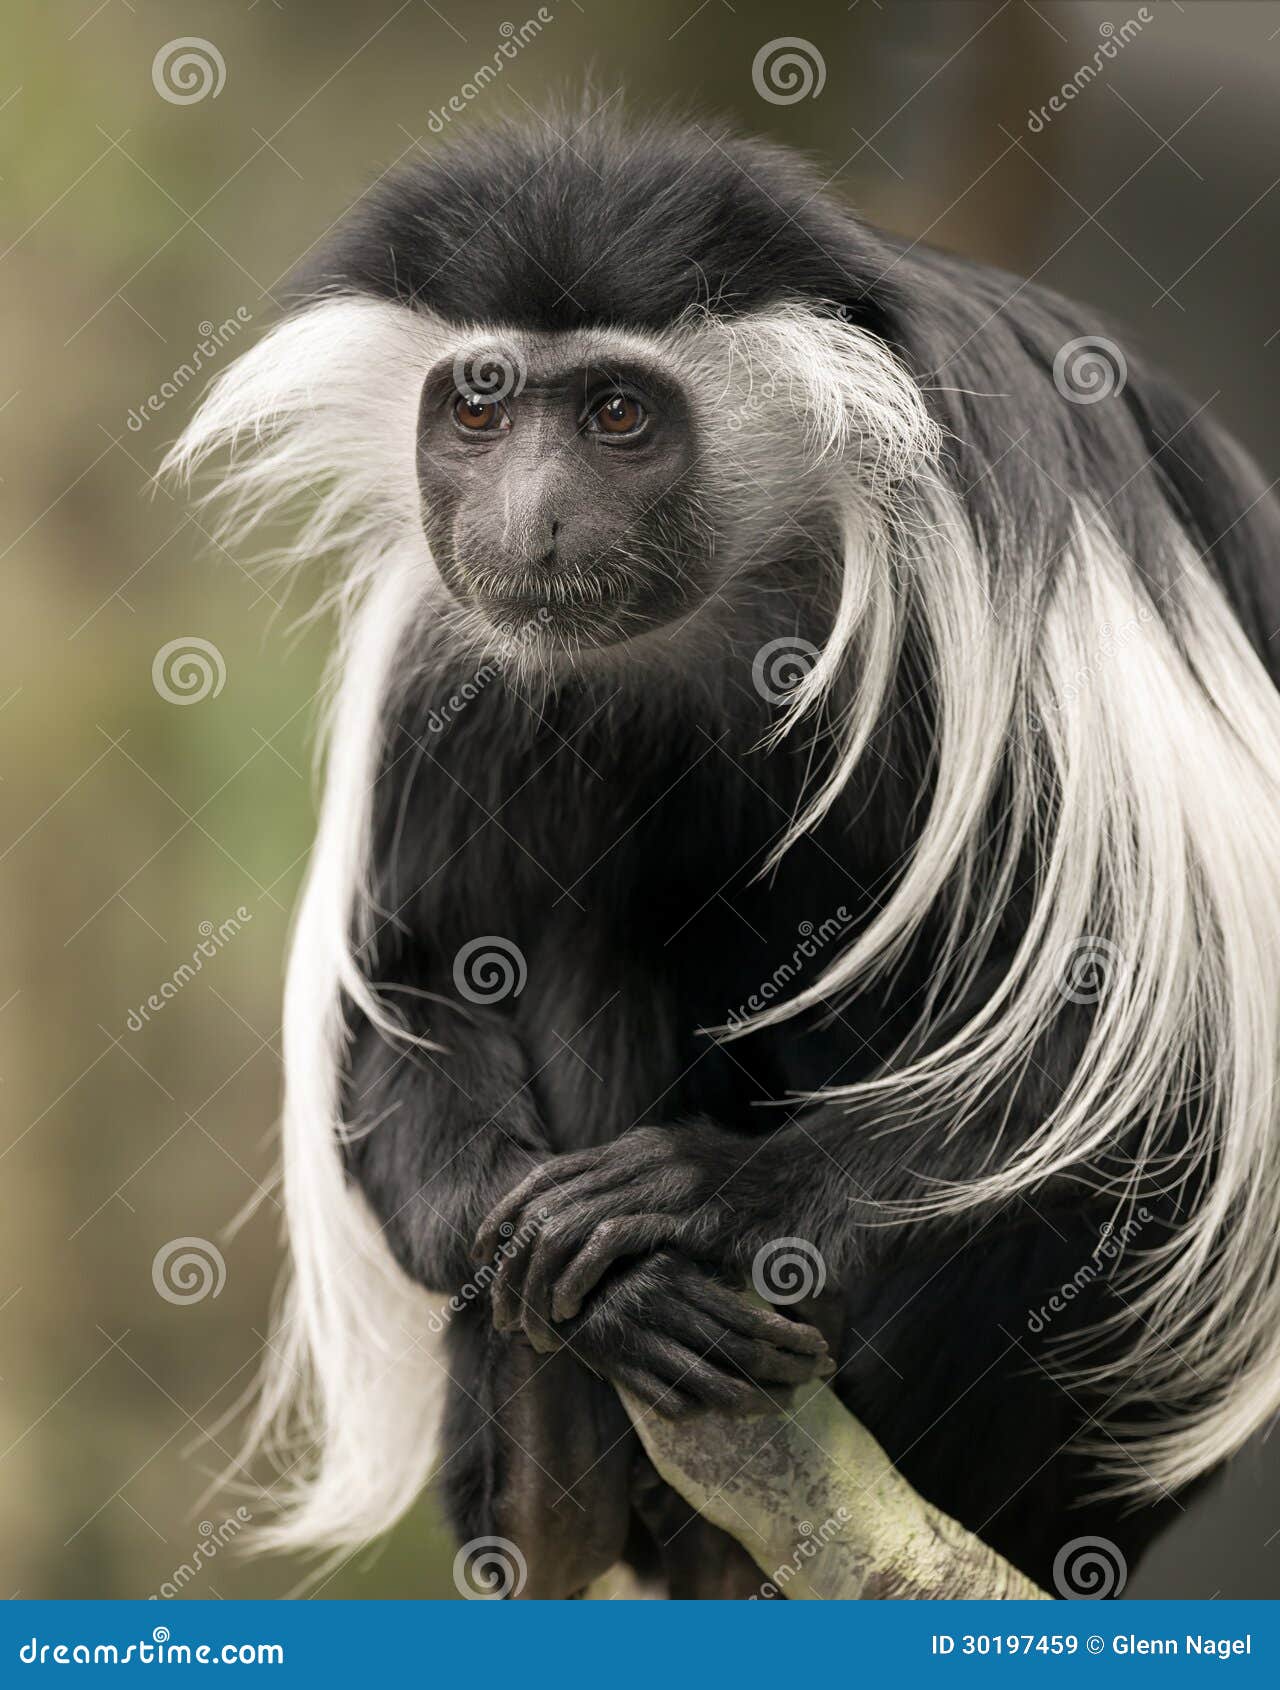 colobus monkey